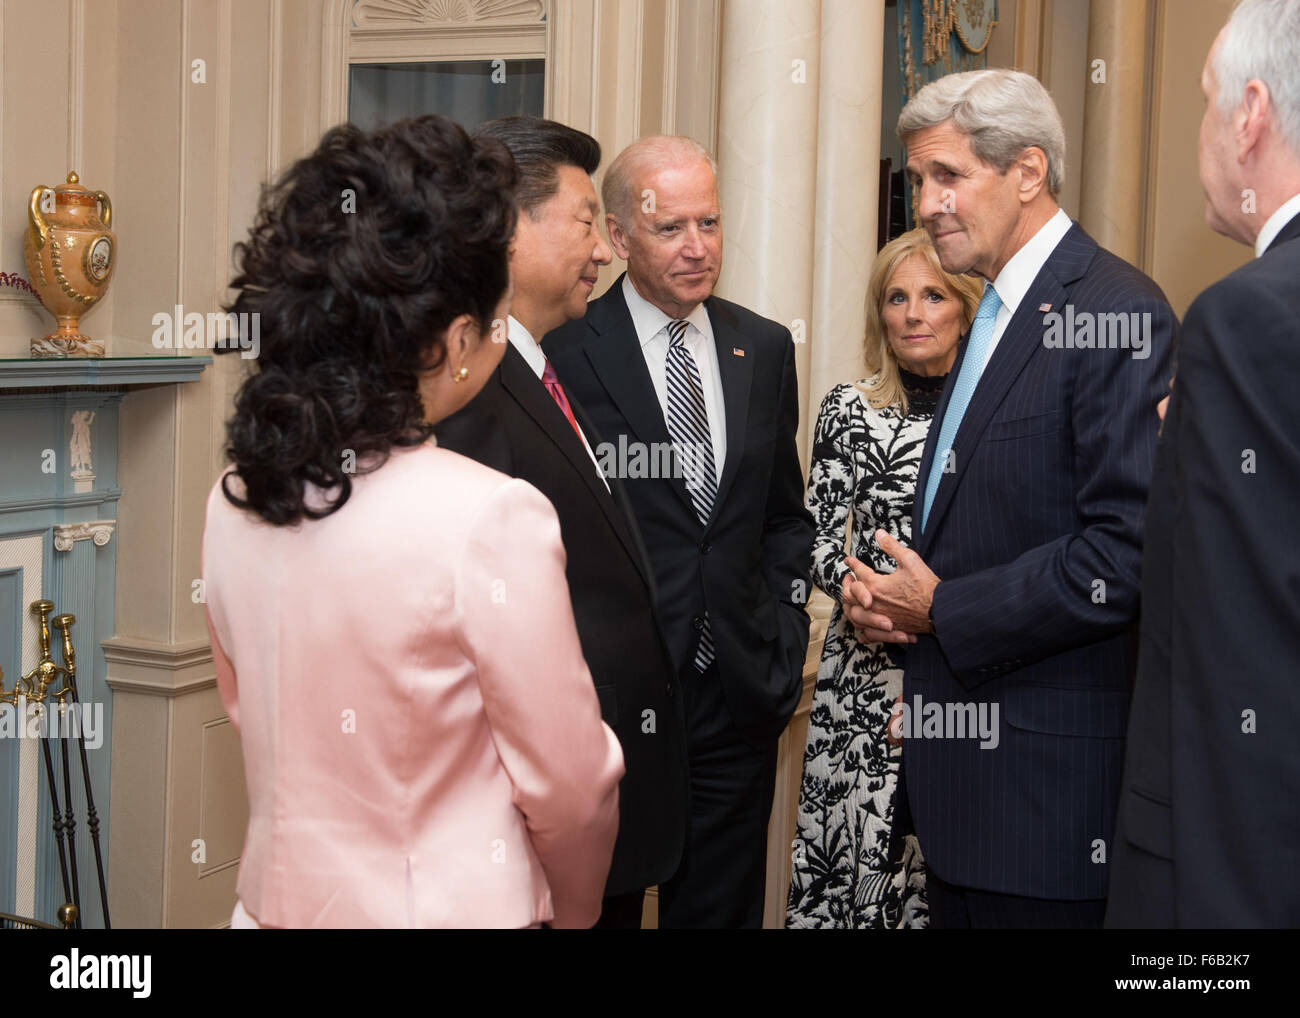 Segretario di Kerry, Dr. Biden e Vicepresidente Biden Benvenuti Chiense Presidente Xi e sua moglie, Peng Liyuan, per uno Stato pranzo presso il Dipartimento di Stato Foto Stock